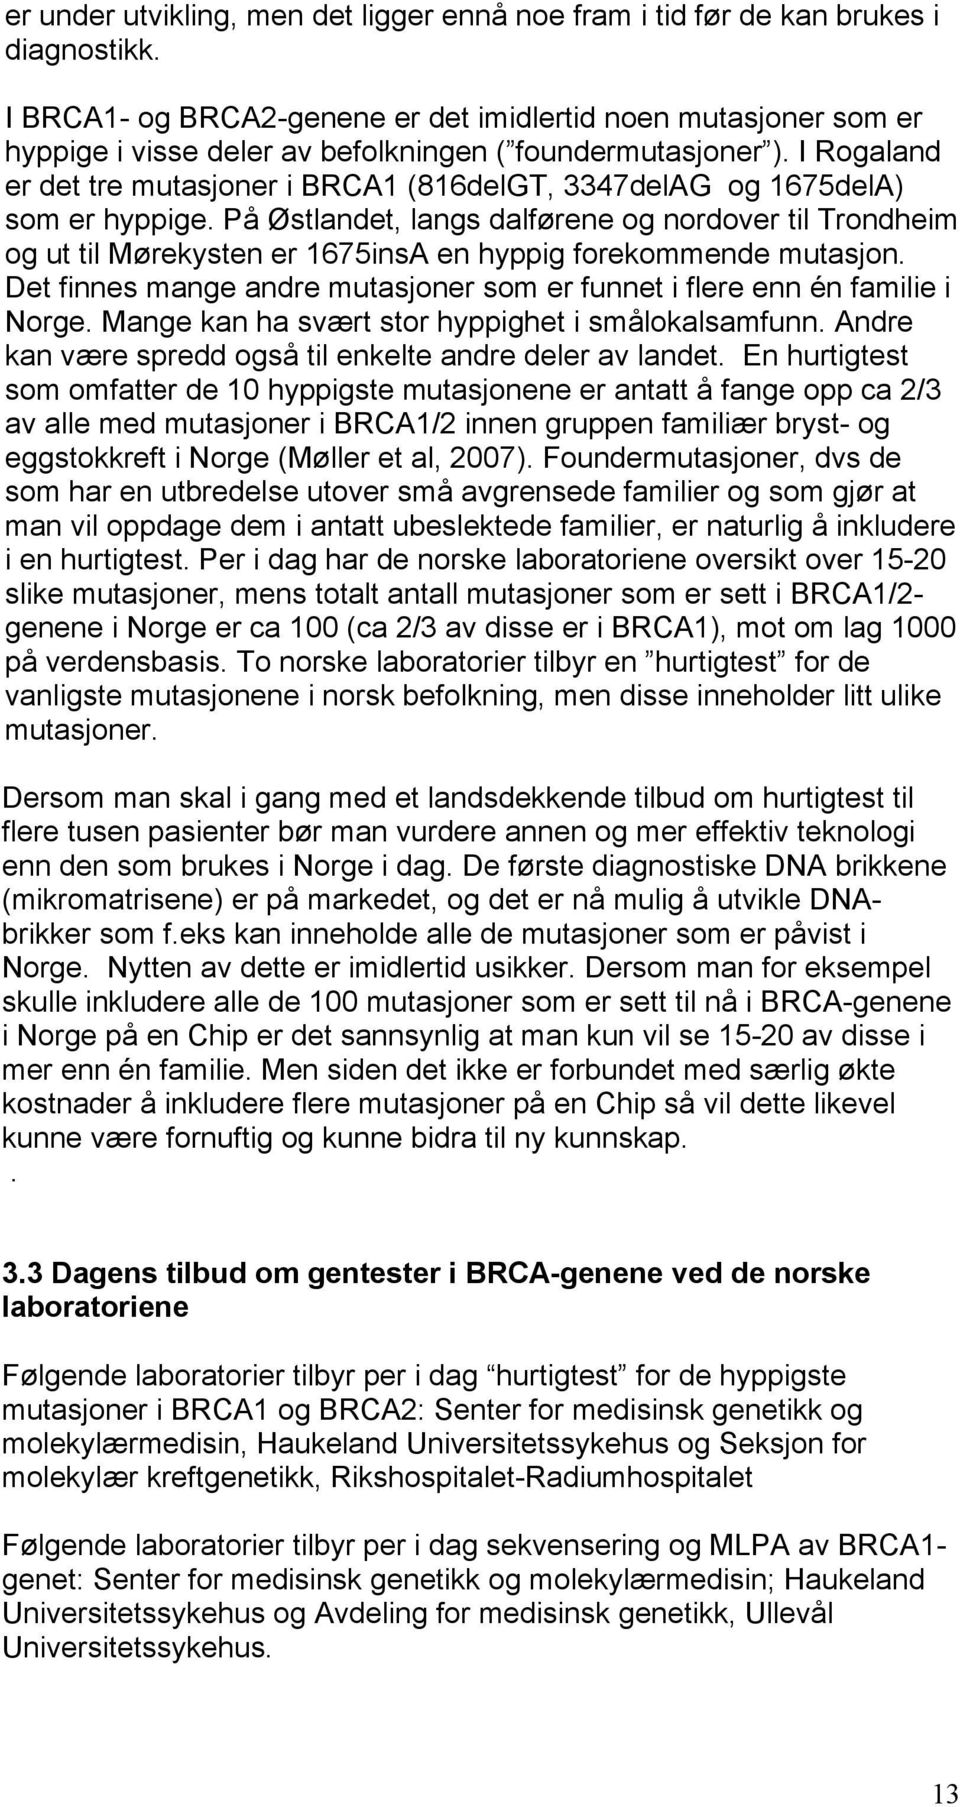 I Rogaland er det tre mutasjoner i BRCA1 (816delGT, 3347delAG og 1675delA) som er hyppige.